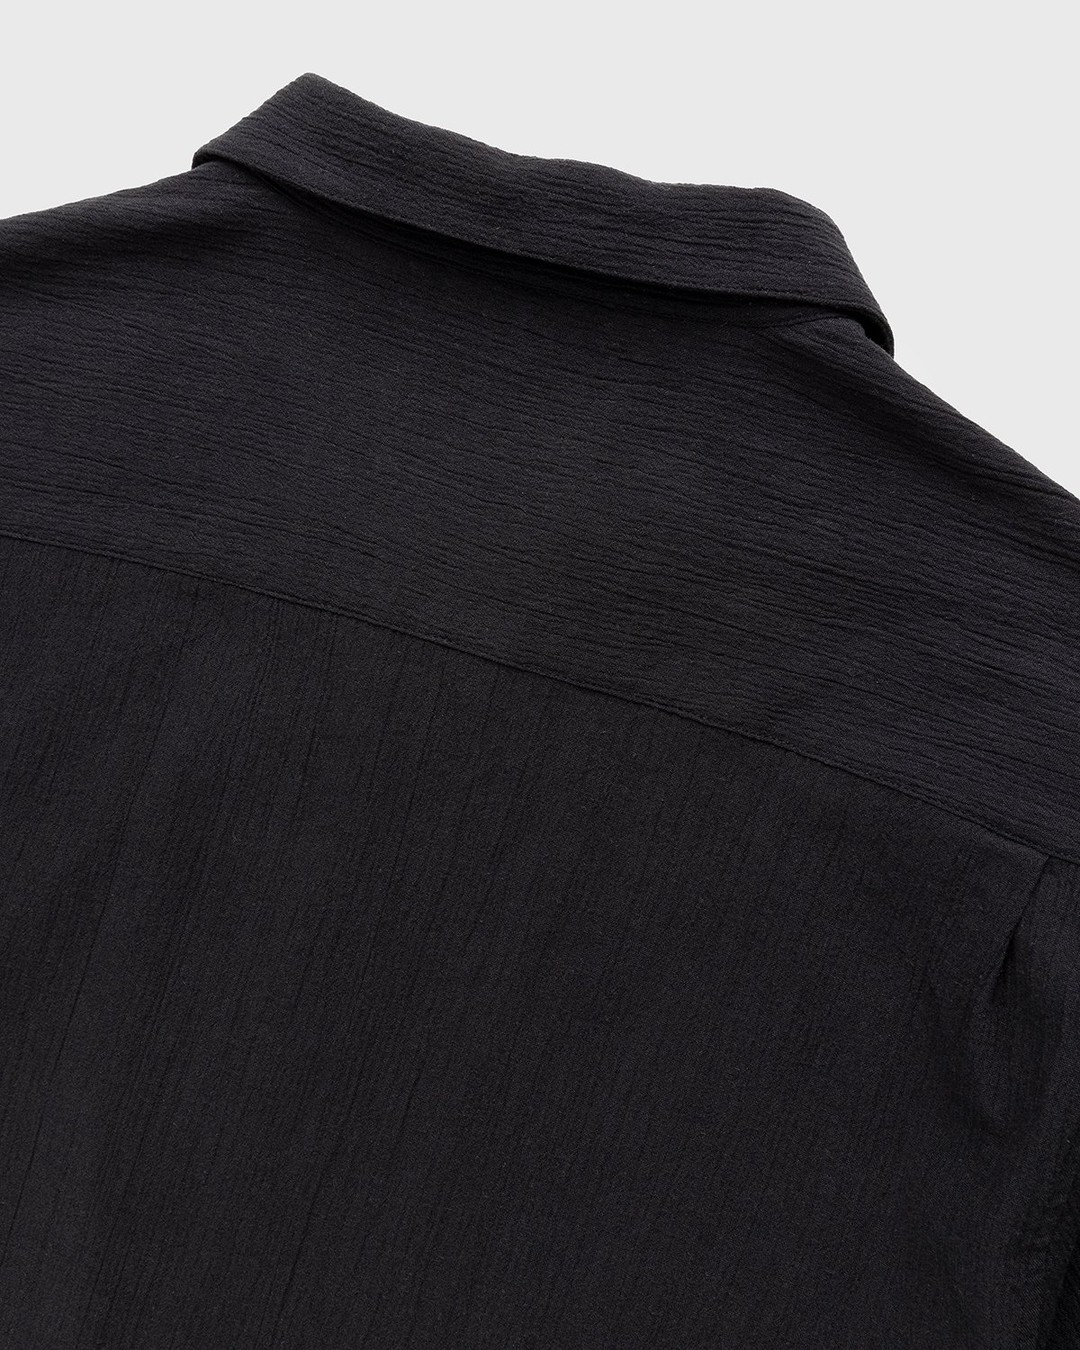 Highsnobiety – Crepe Short Sleeve Shirt Black - Shirts - Black - Image 3